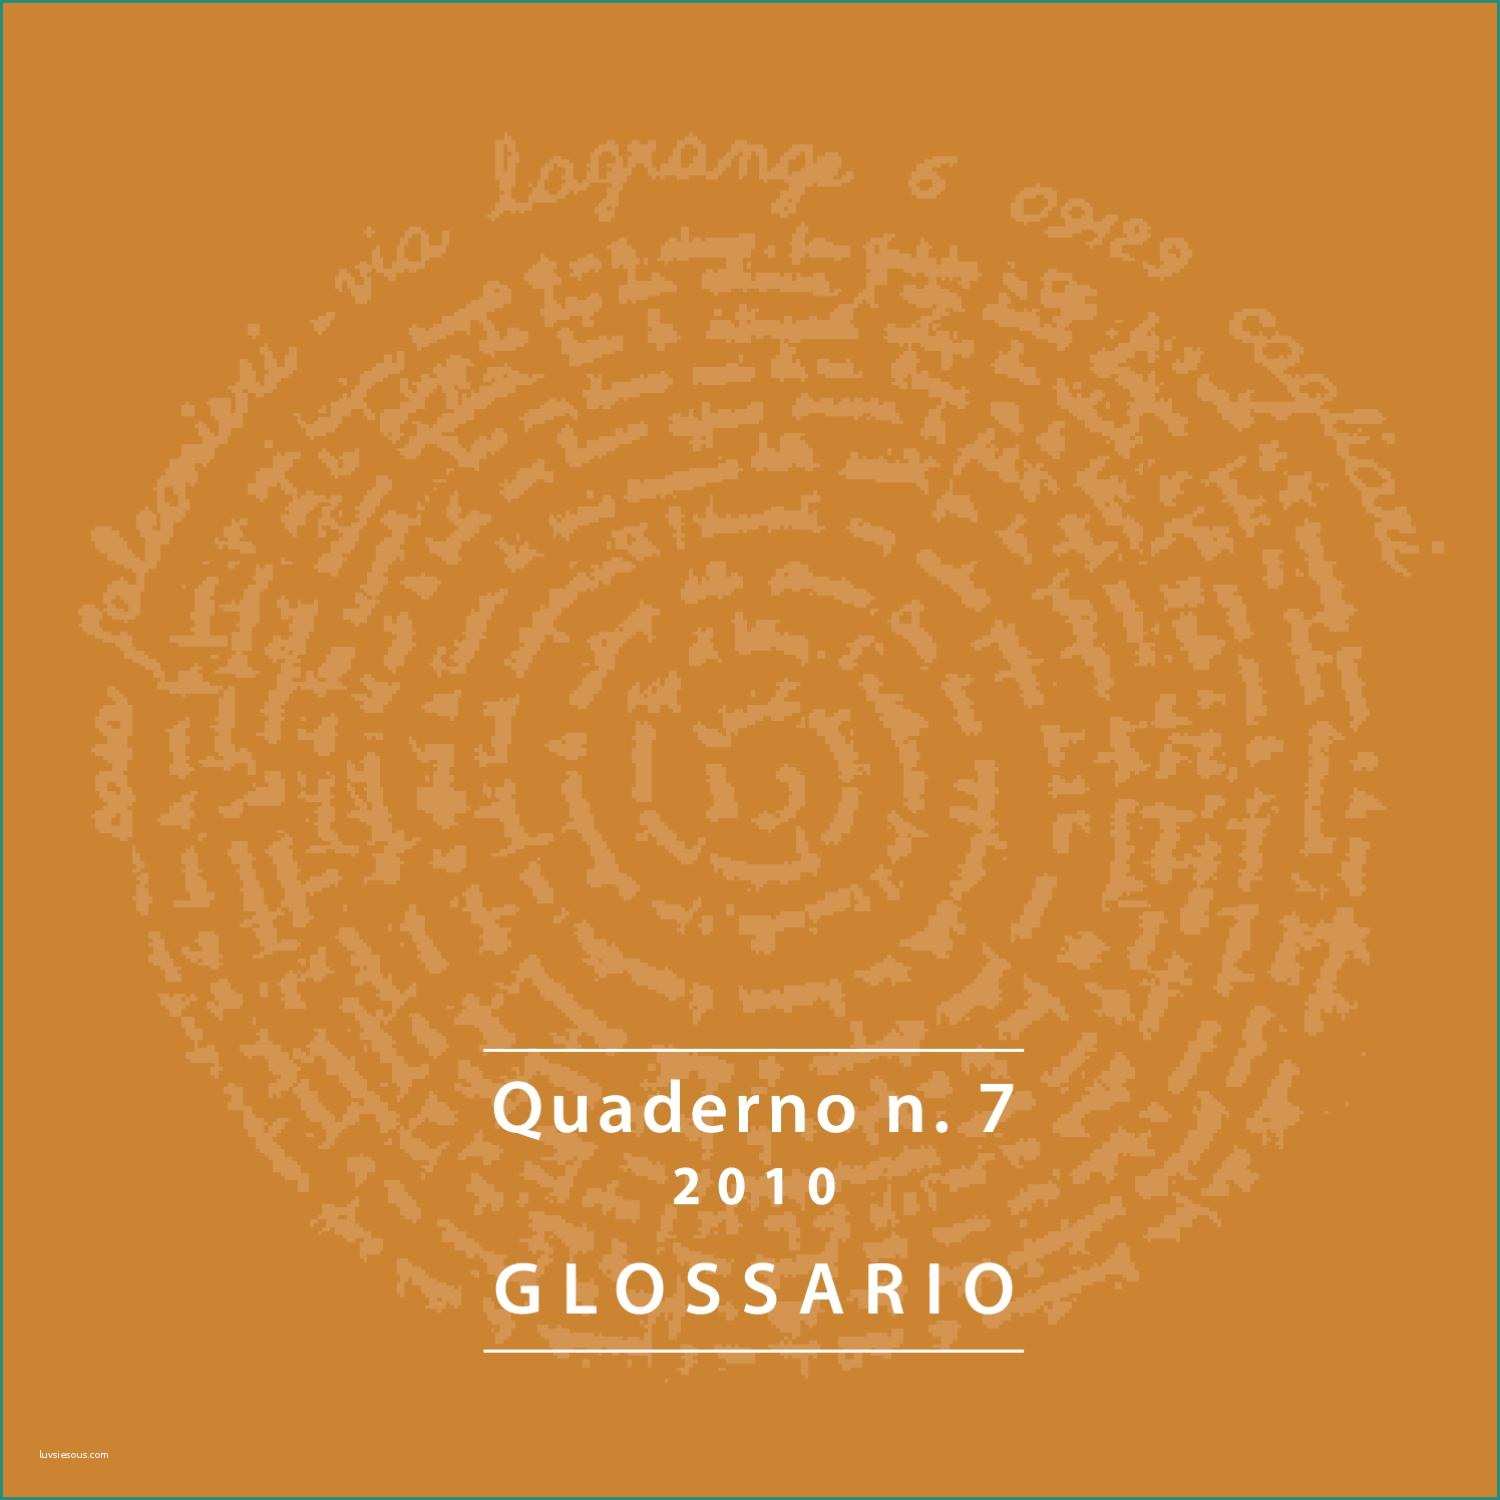 Quaderni Prima Elementare Da Scaricare E Quaderno 7 by Casa Falconieri Casa Falconieri issuu